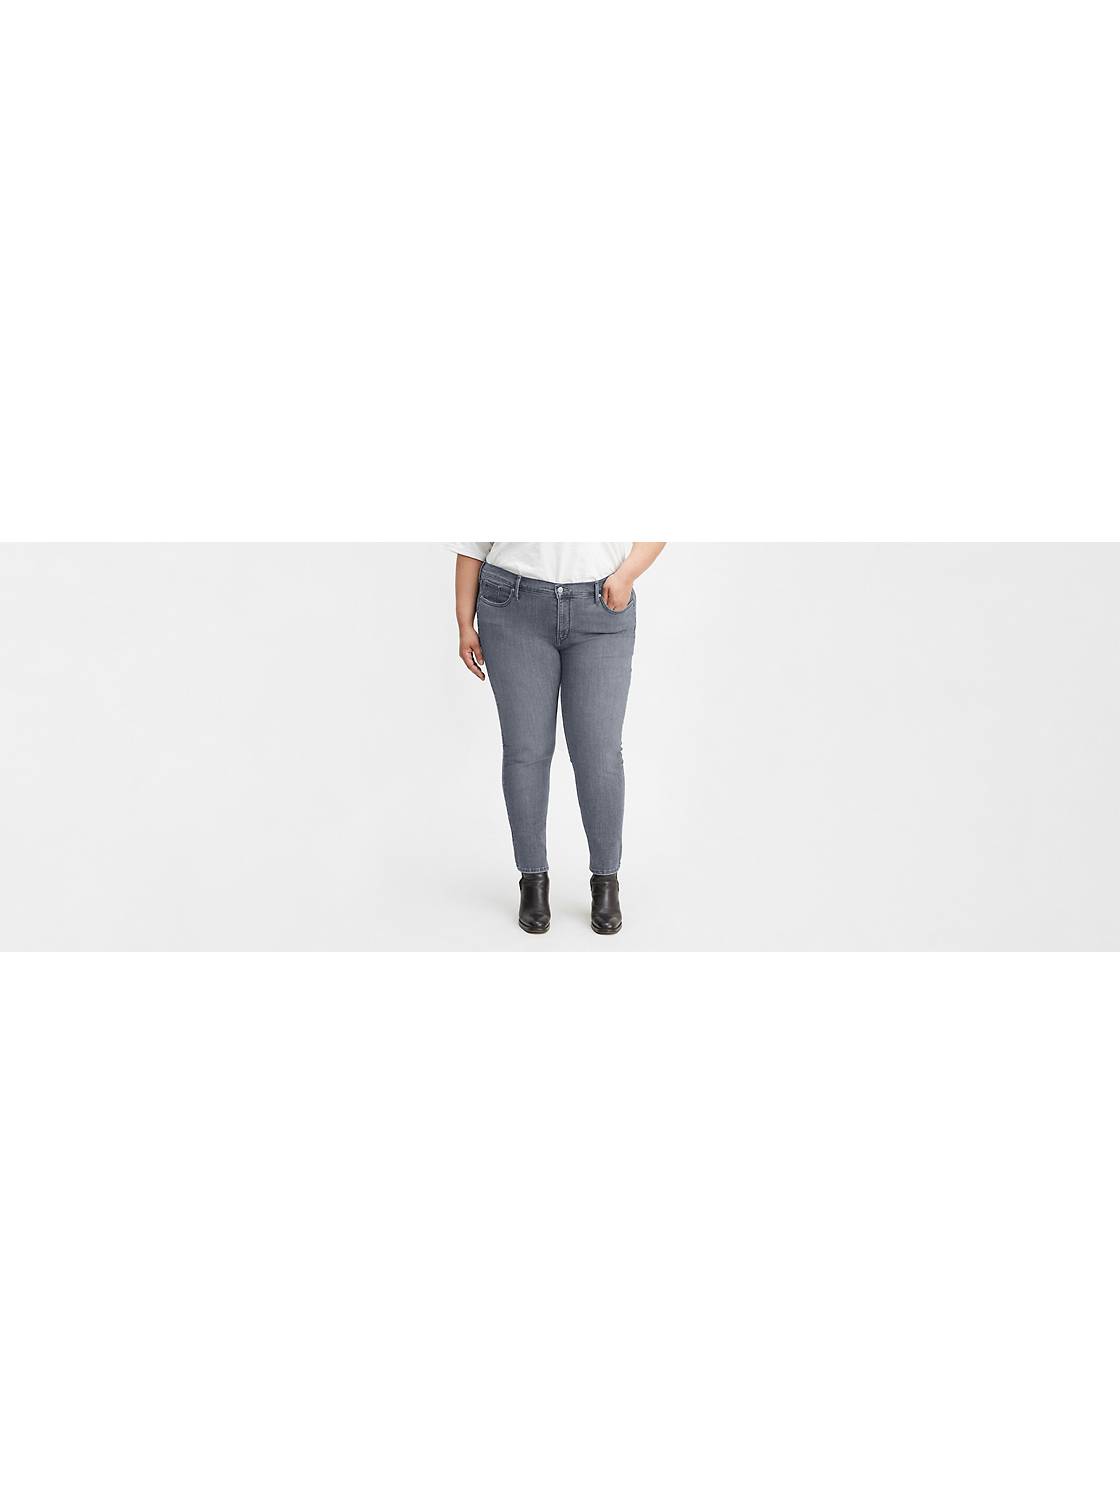 Women's Grey Jeans